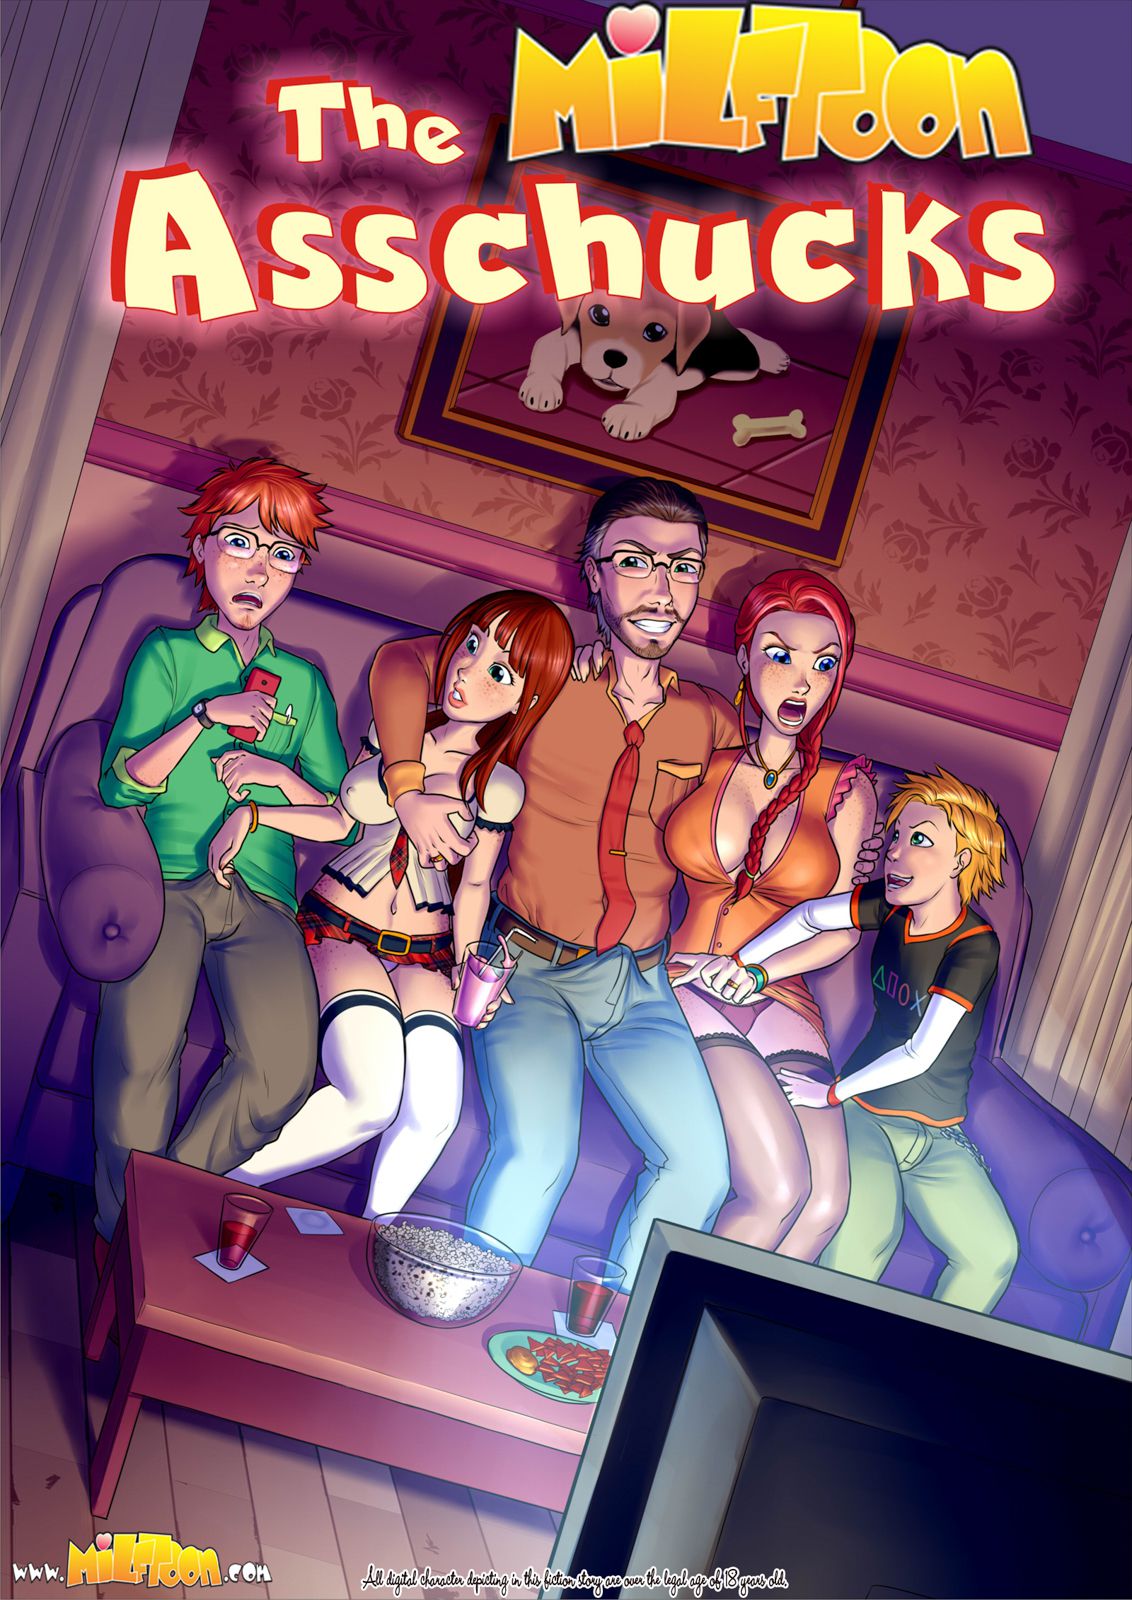 The asschucks